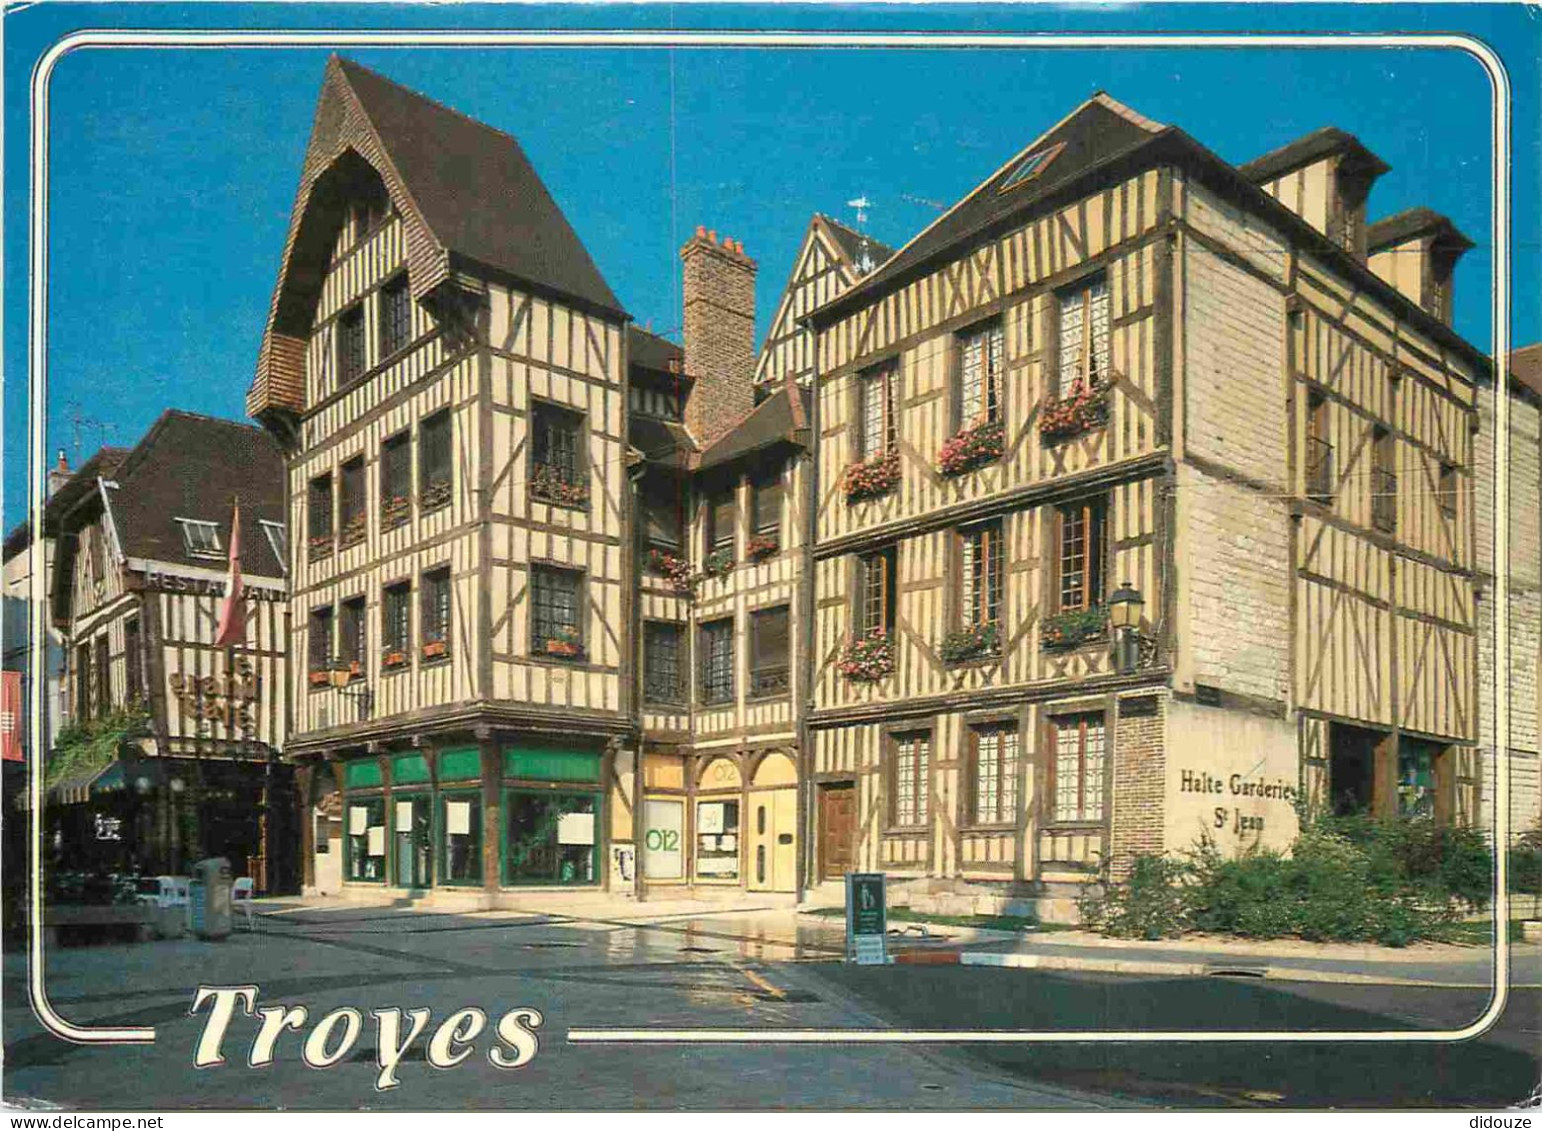 10 - Troyes - Maisons Du XVIe Siècle Dans Le Secteur Piétonnier - Place Alexandre Israël - Vieilles Maisons Champenoises - Troyes